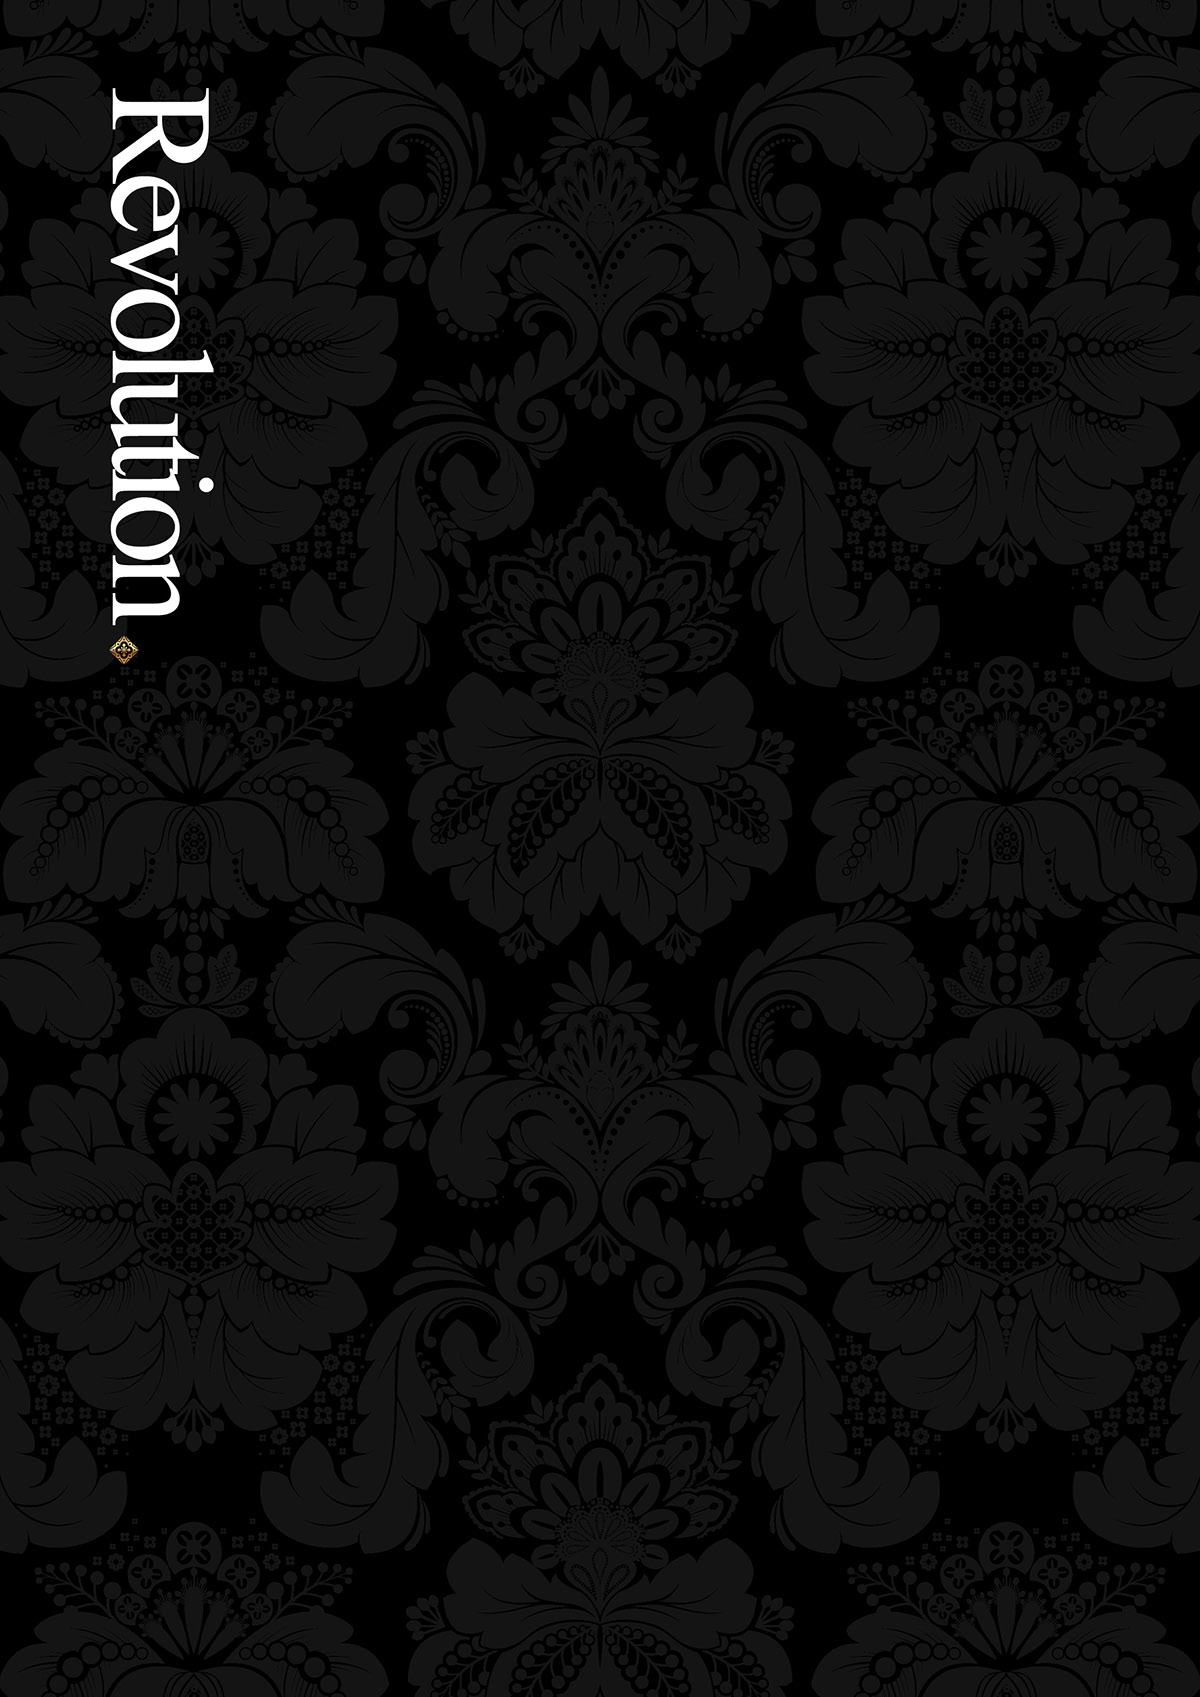 exclusive gold pattern brochure a4 portrait Retail floral floral pattern black magazine